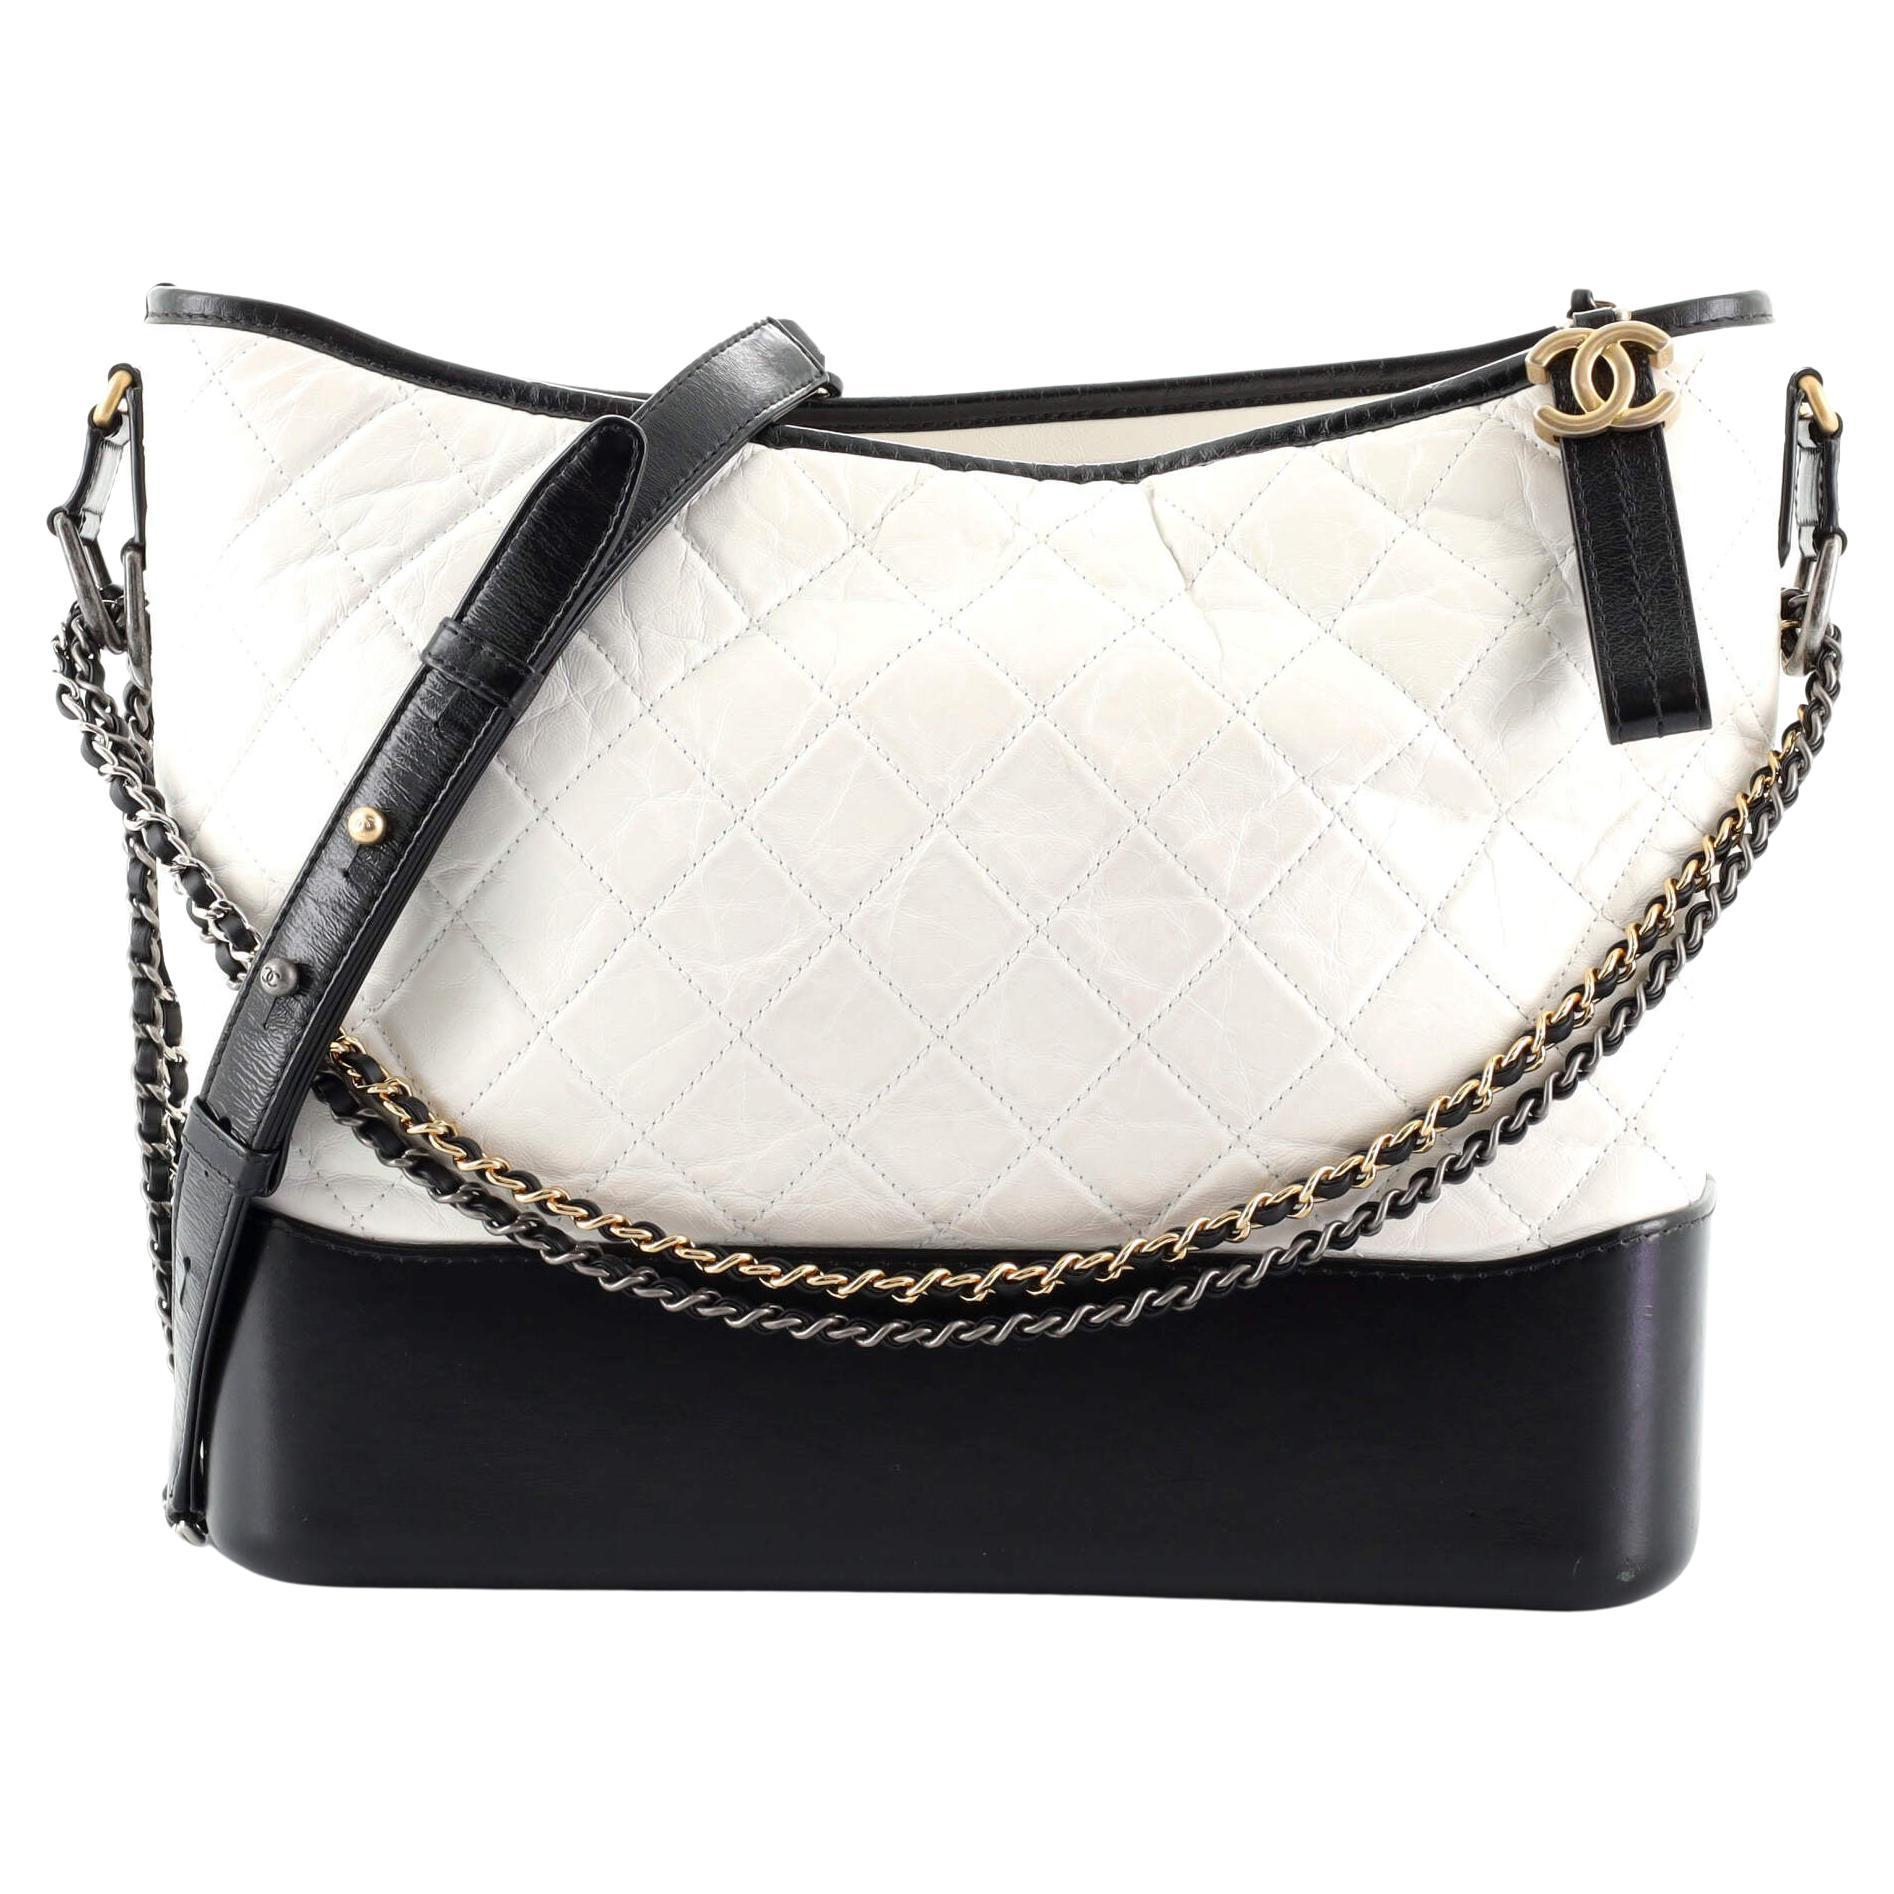 Chanel Large Gabrielle Hobo Handbag